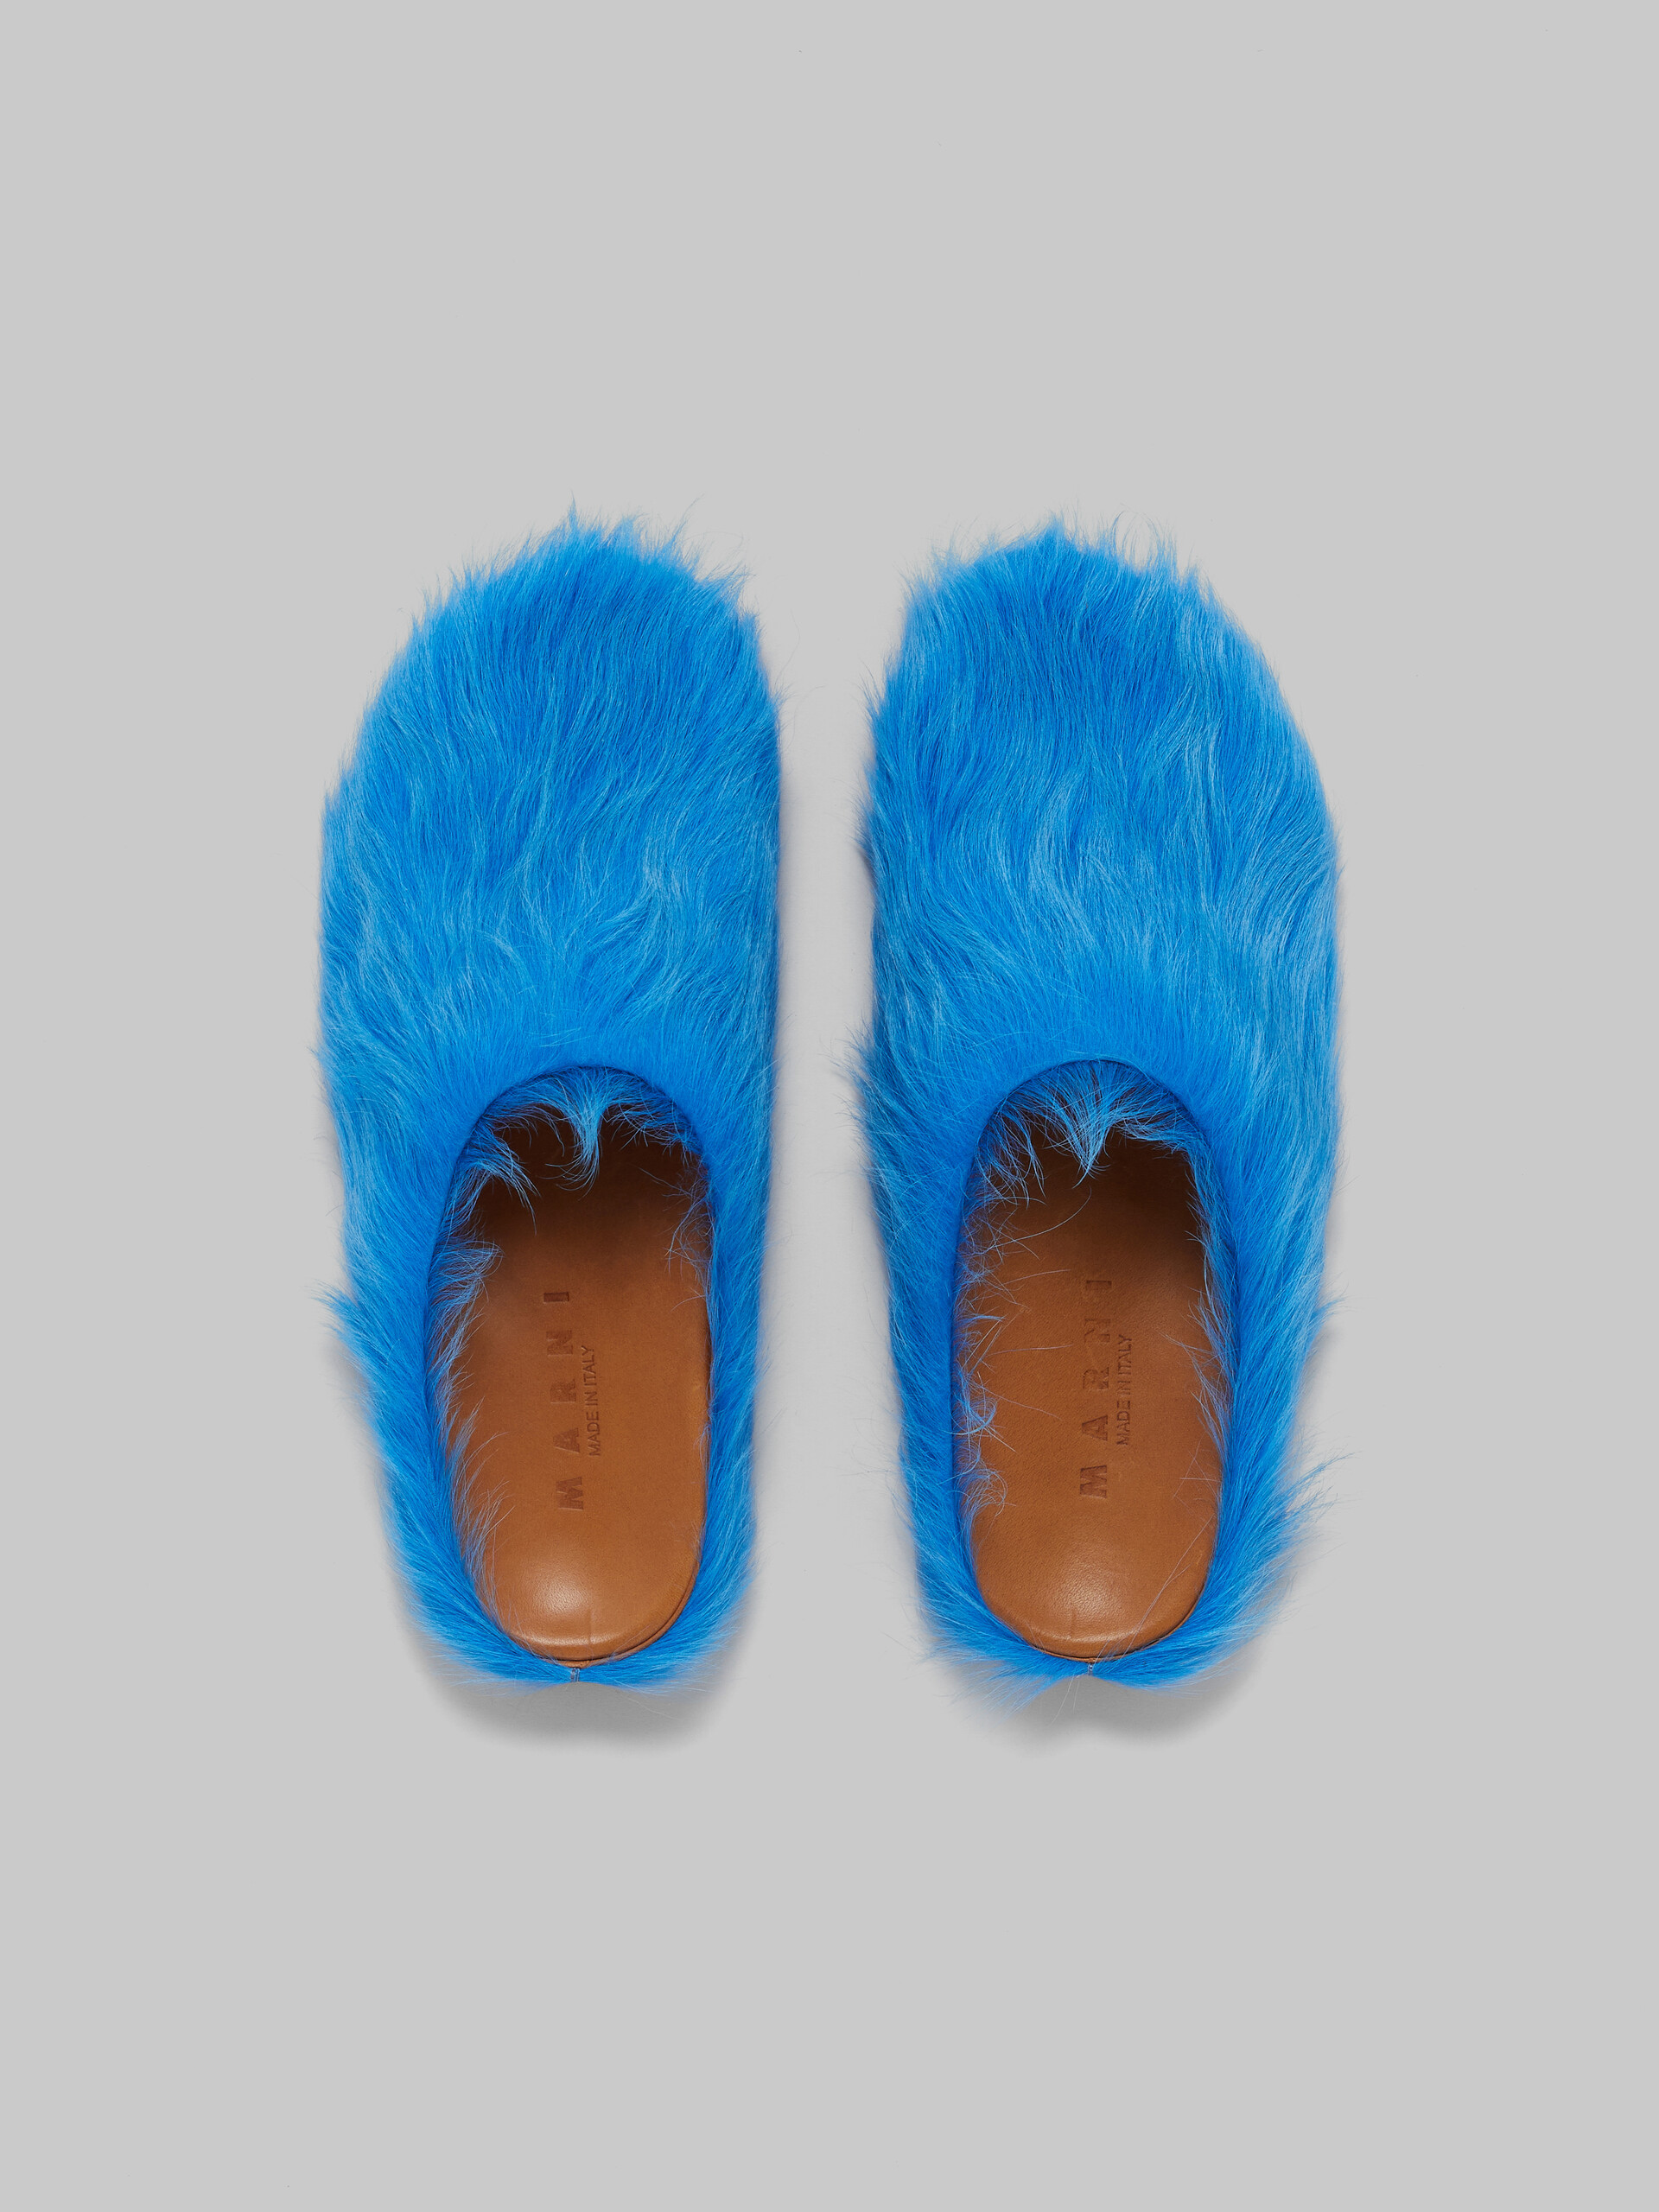 Mocasín sin talón de piel de becerro azul efecto pelo sensación de pies descalzos - Zuecos - Image 4